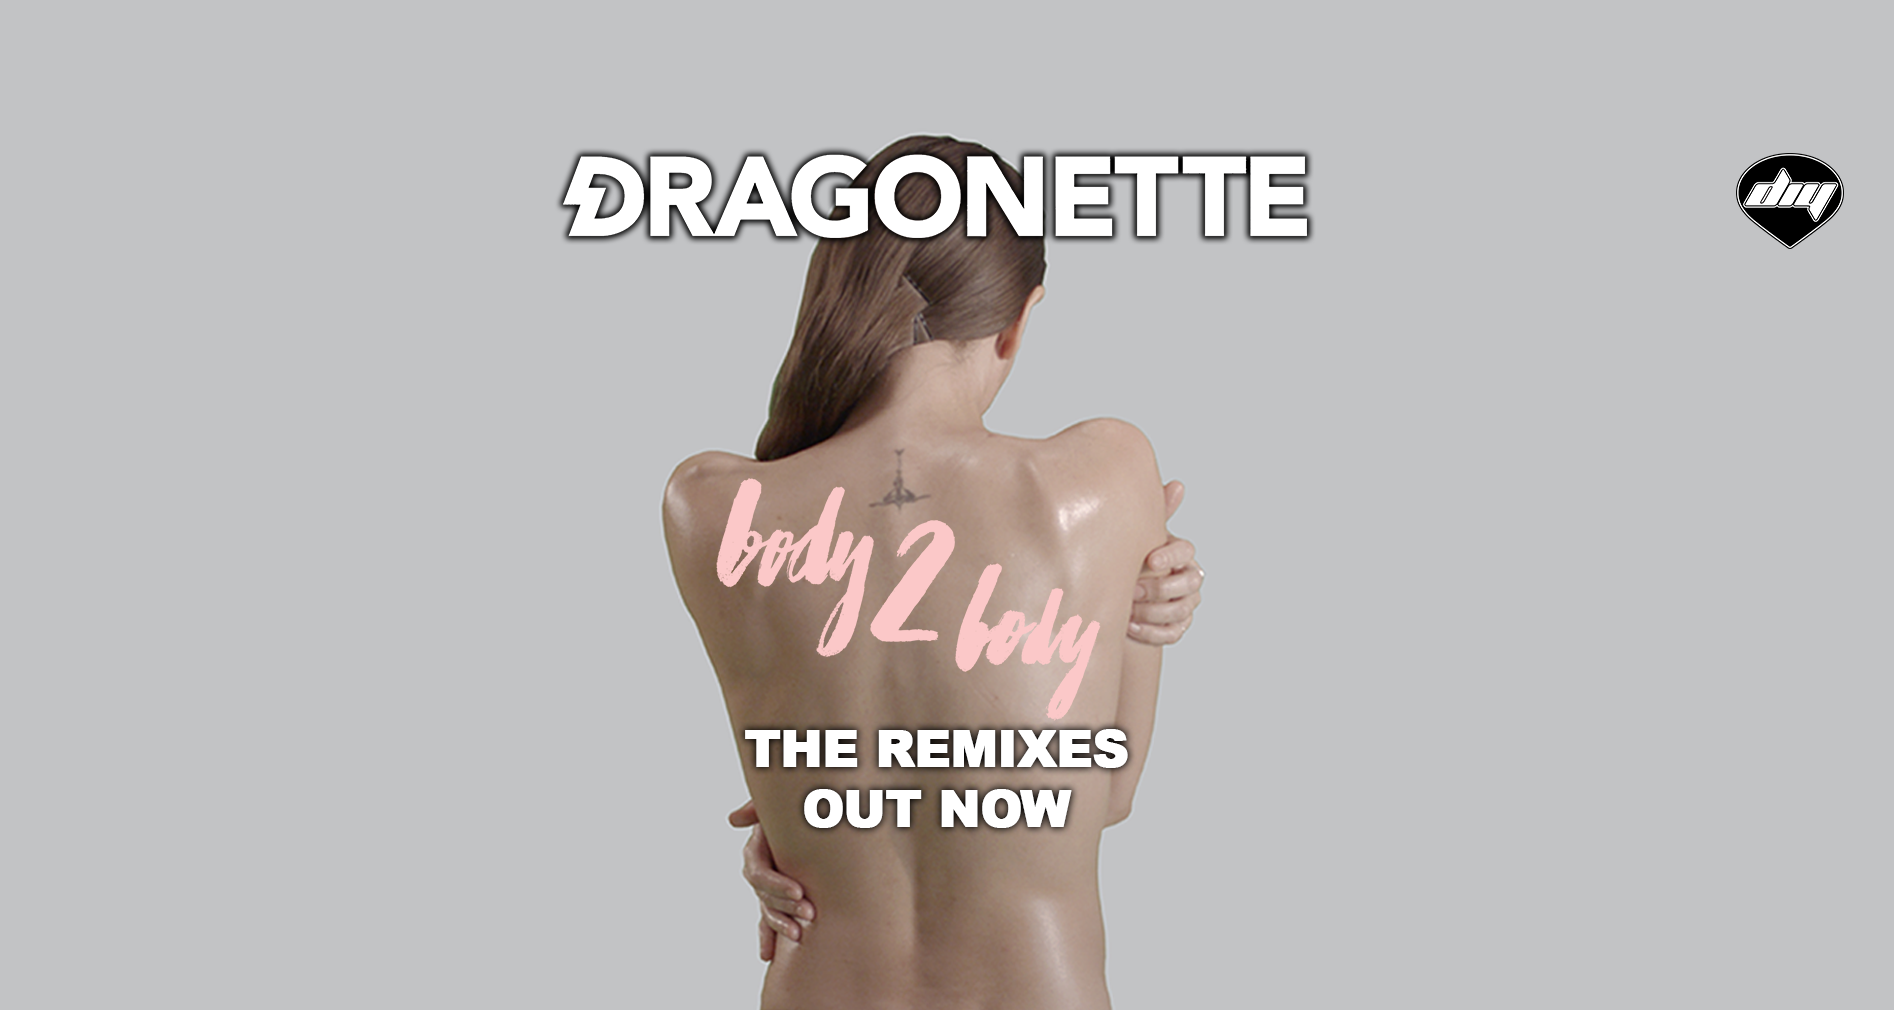 Dragonette - Body 2 Body (The Remixes)